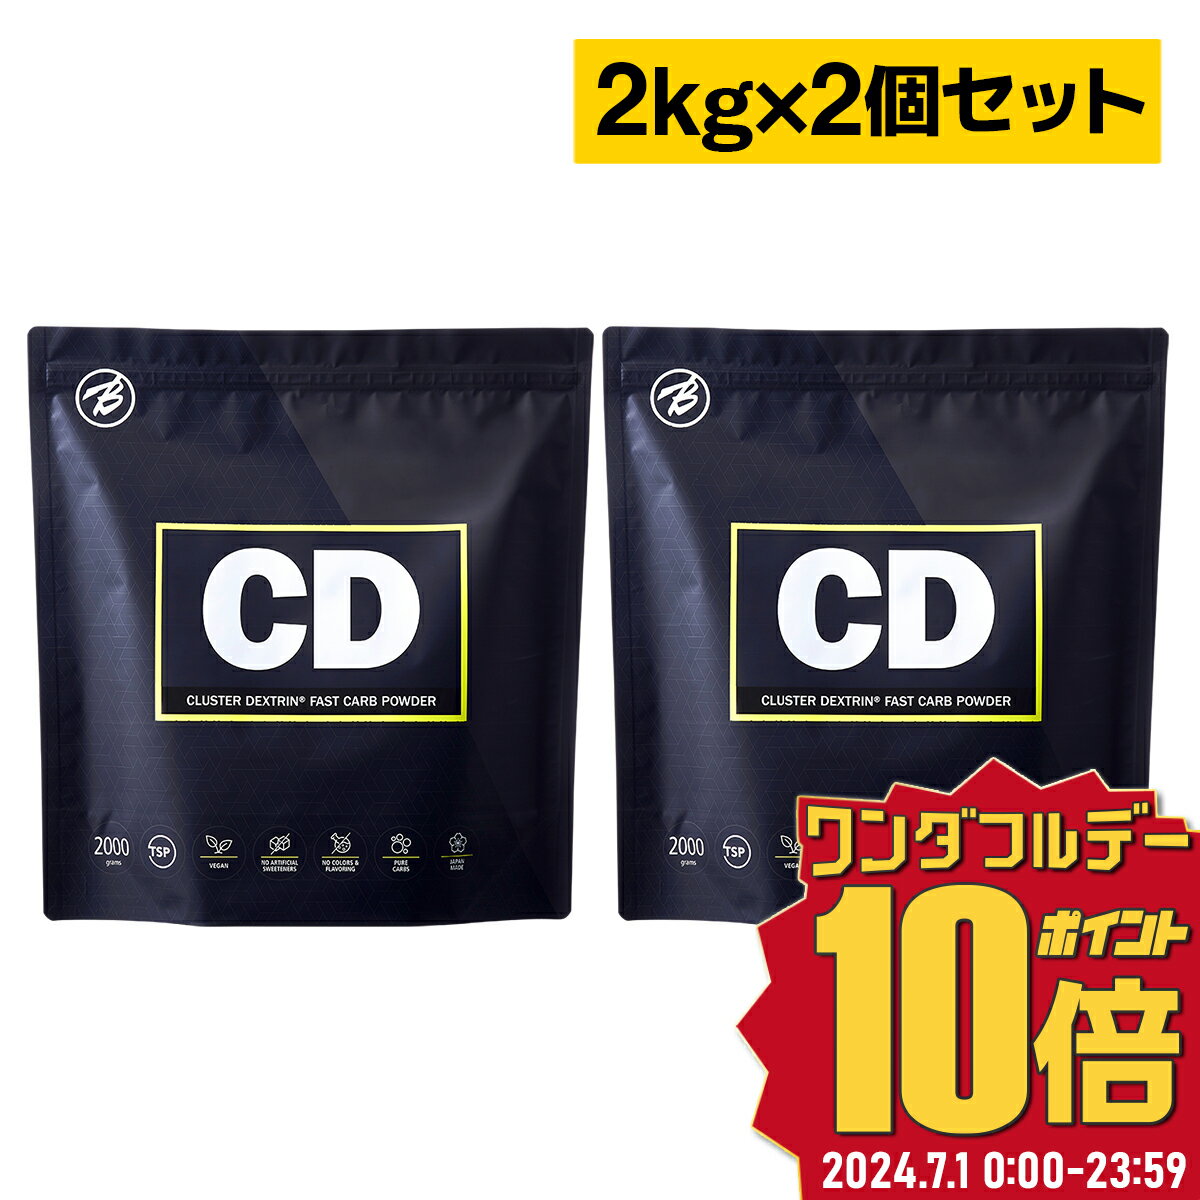 【バルクスポーツ】CD クラスターデキストリン国産 2kg お得な2個セット 約180食分 福袋 ギフト